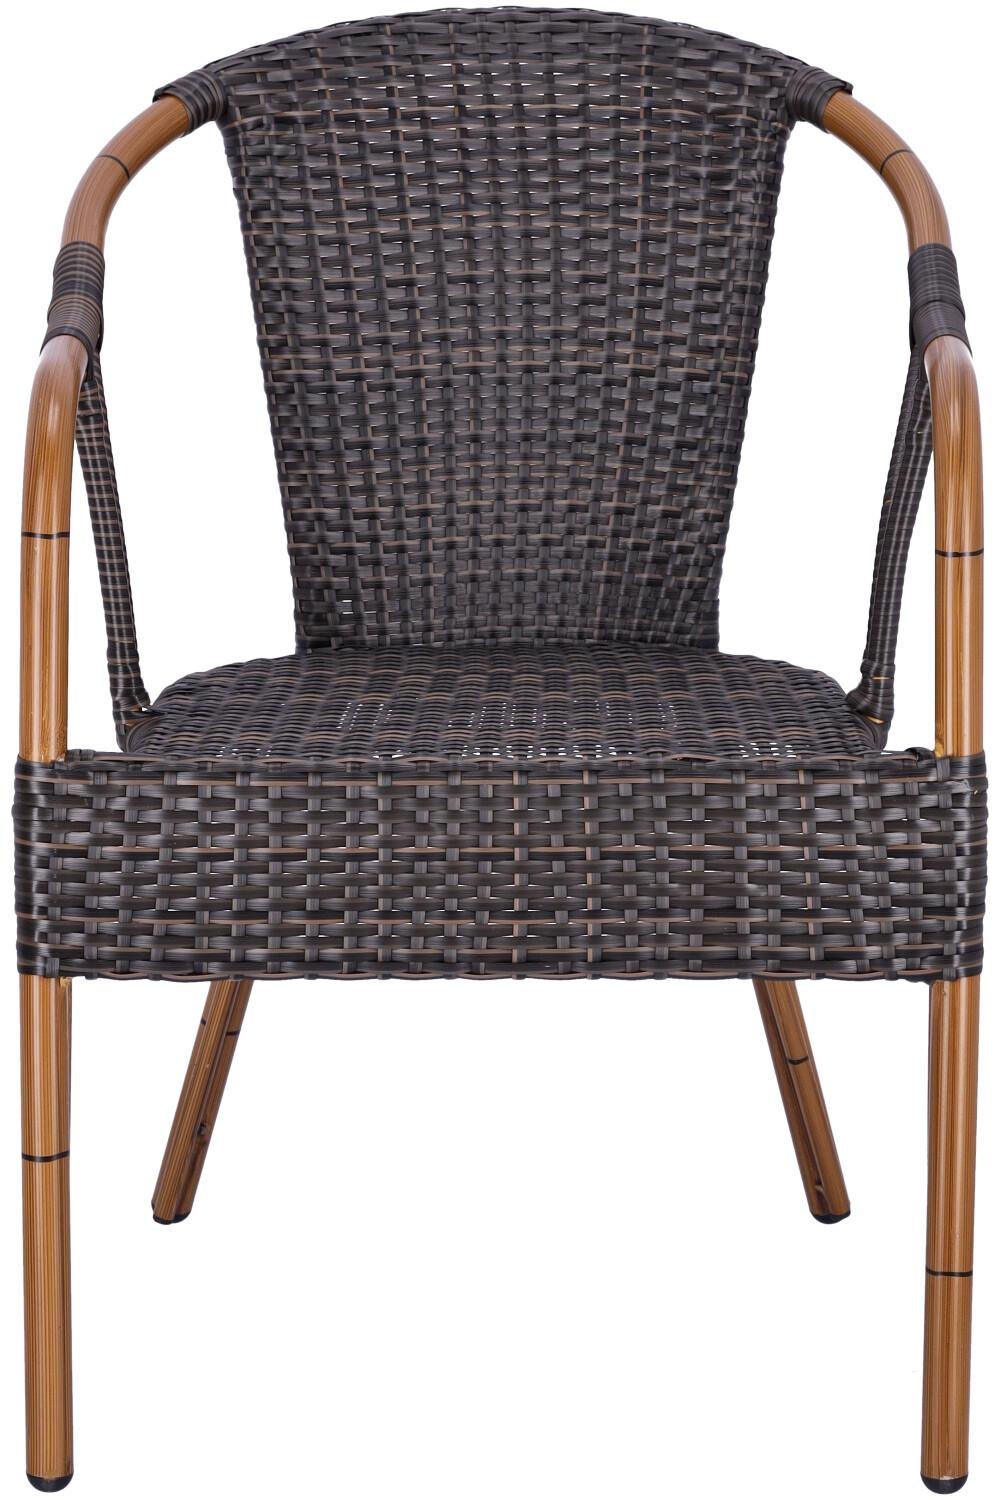 Abbildung arm chair Malva Vorderansicht